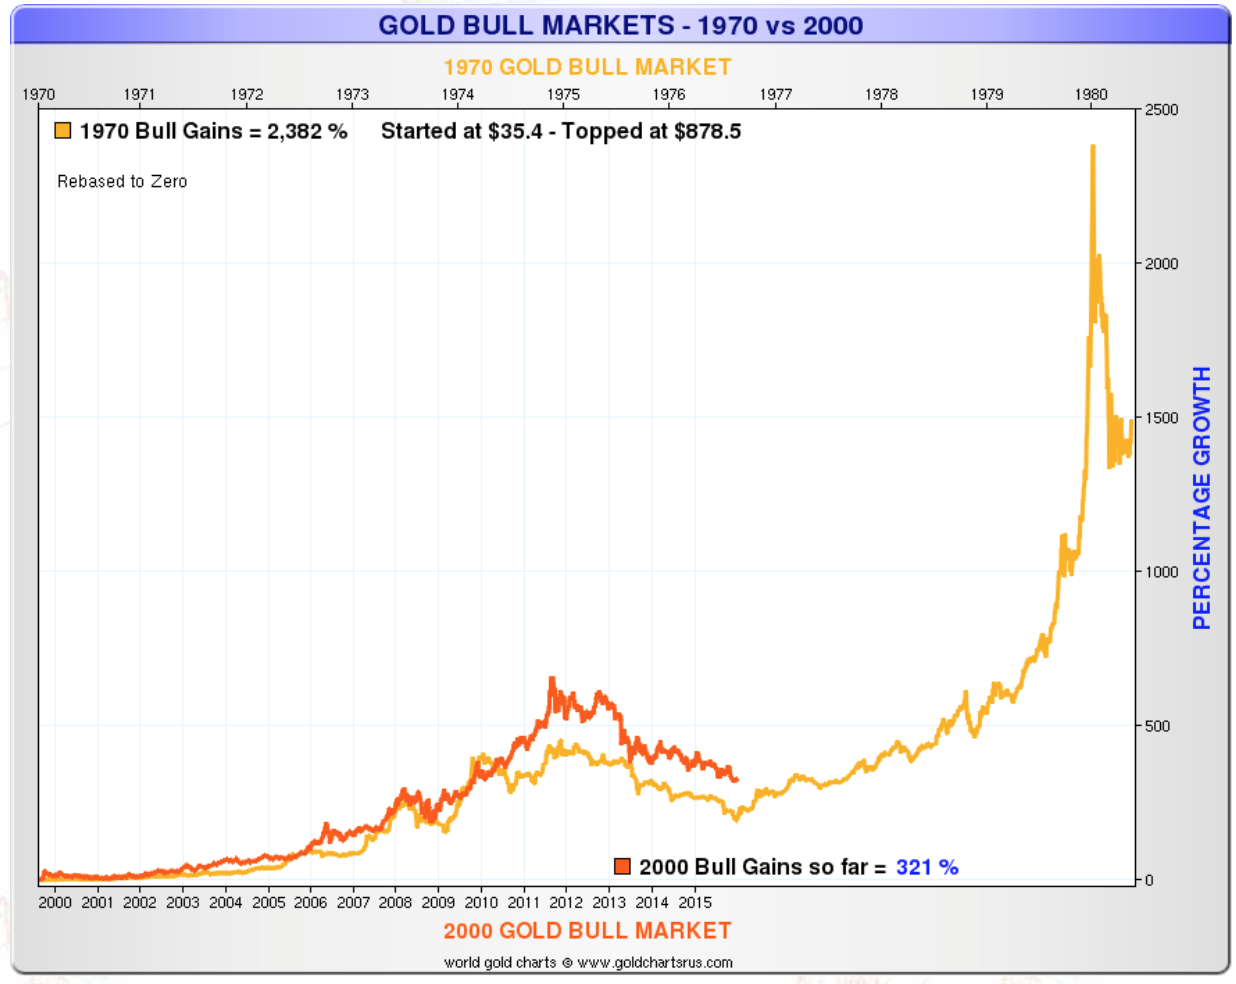 Gold bull market - 1970 vs 2000